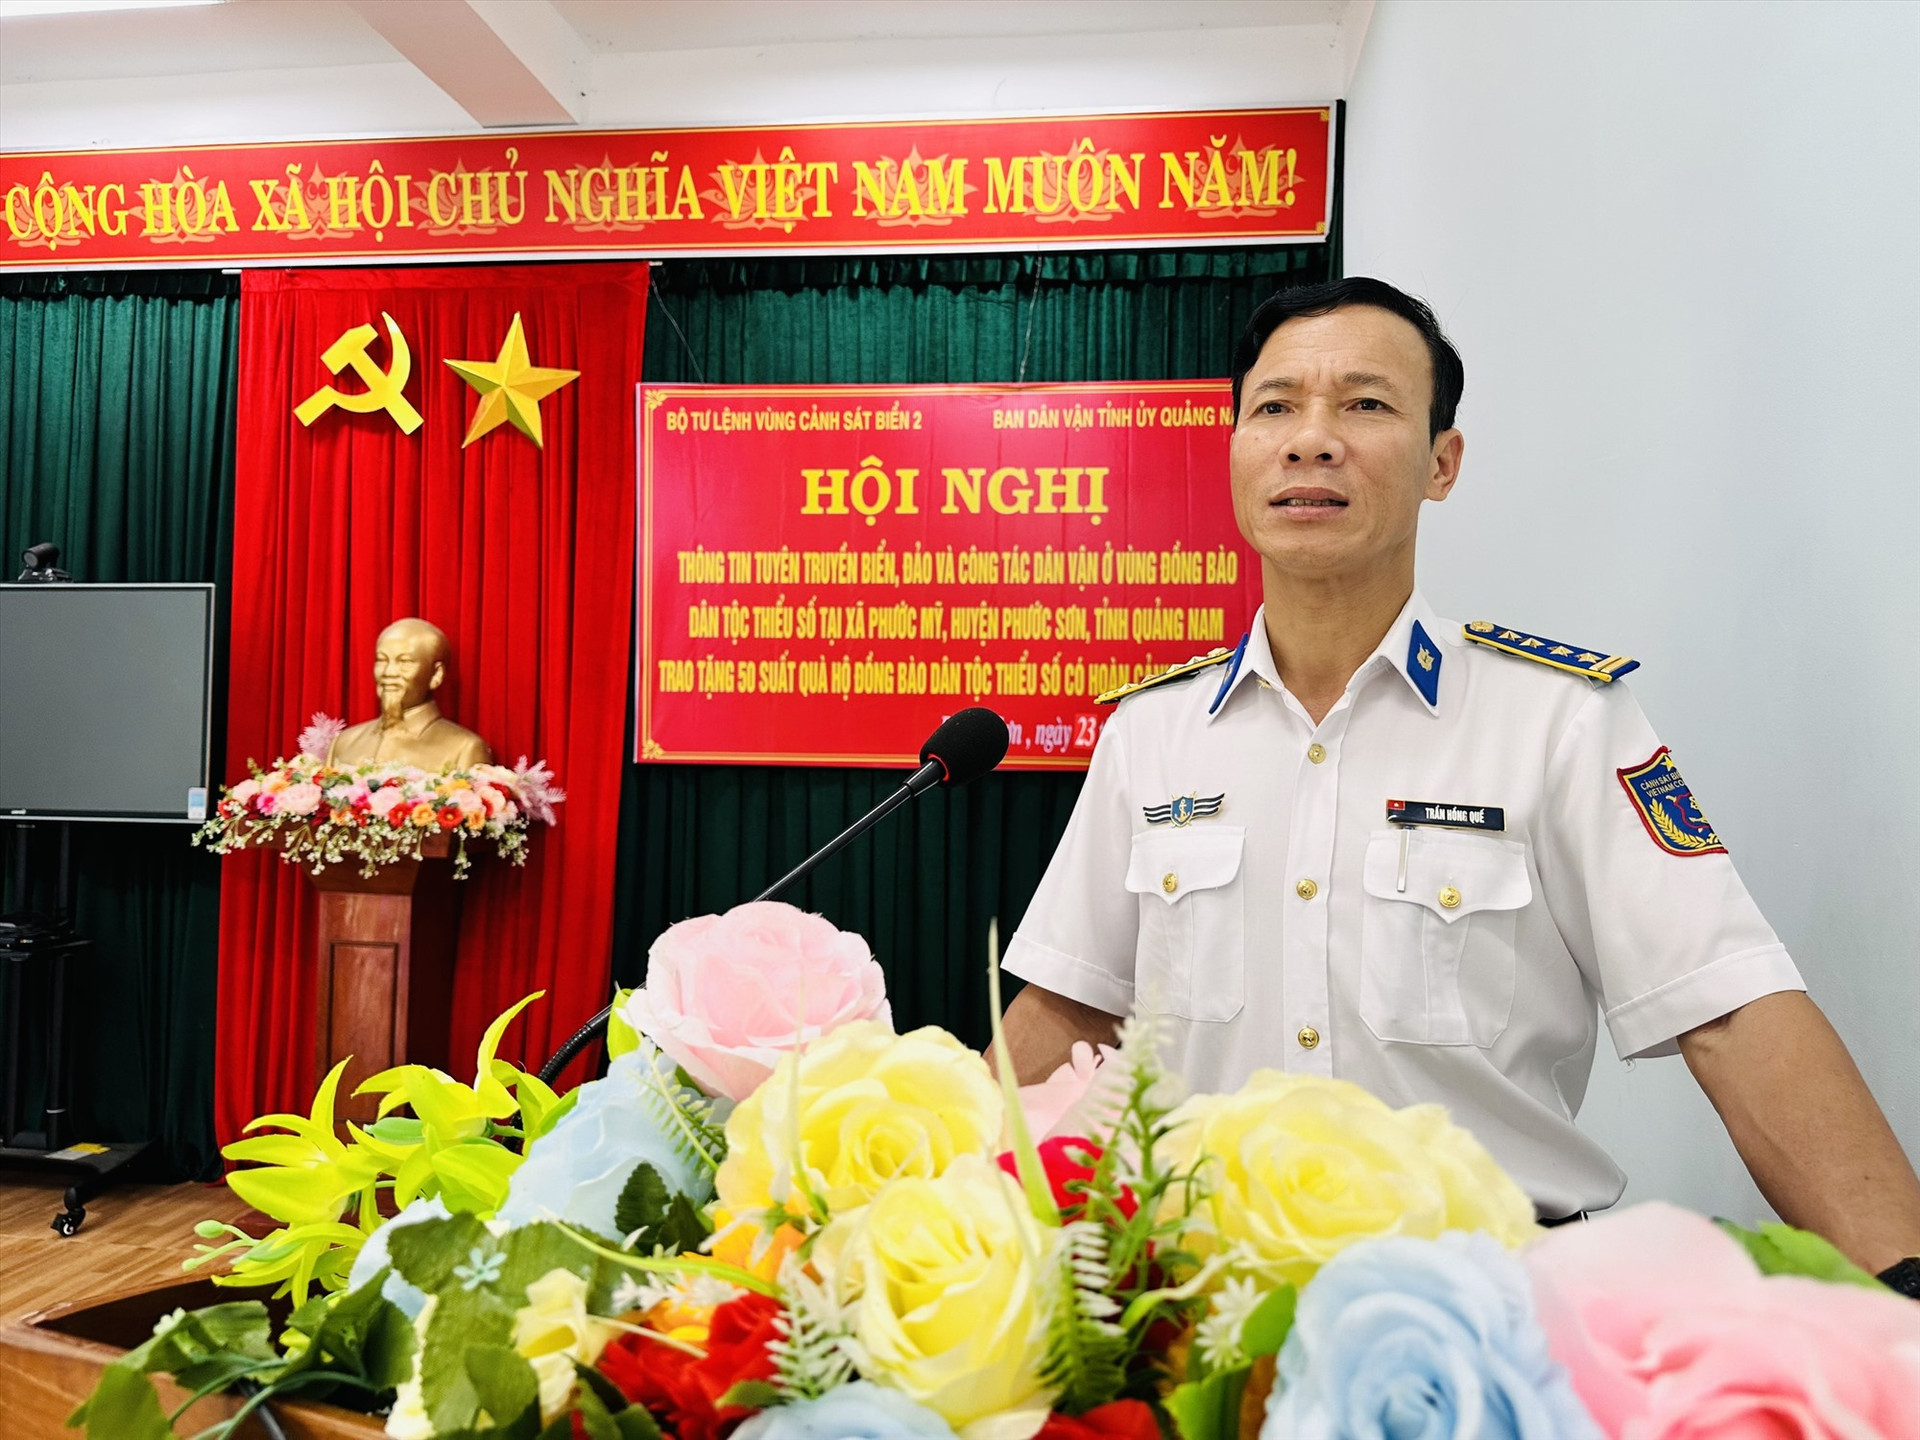 Đại tá Trần Hồng Quế - Phó Chính ủy Vùng Cảnh sát biển 2 thông tin tại buổi tuyên truyền. Ảnh: N.T